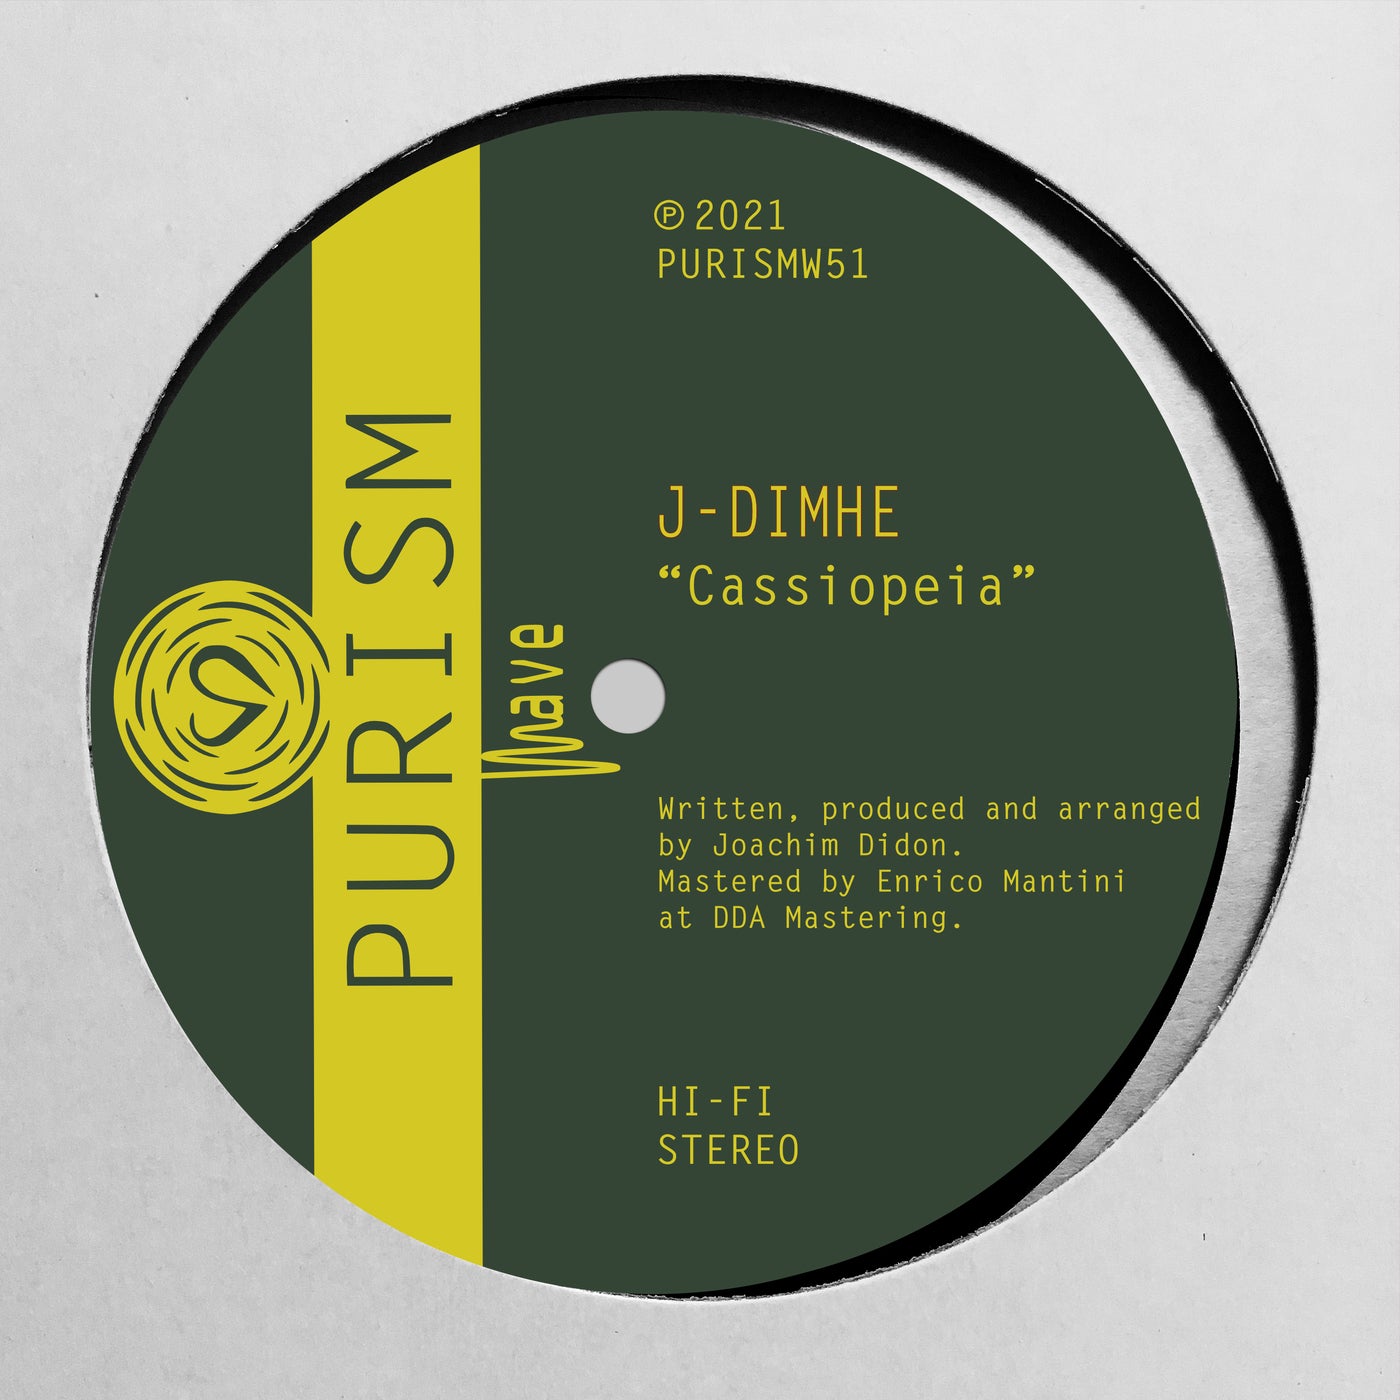 J-dimhe – Cassiopeia [PURISMW51]